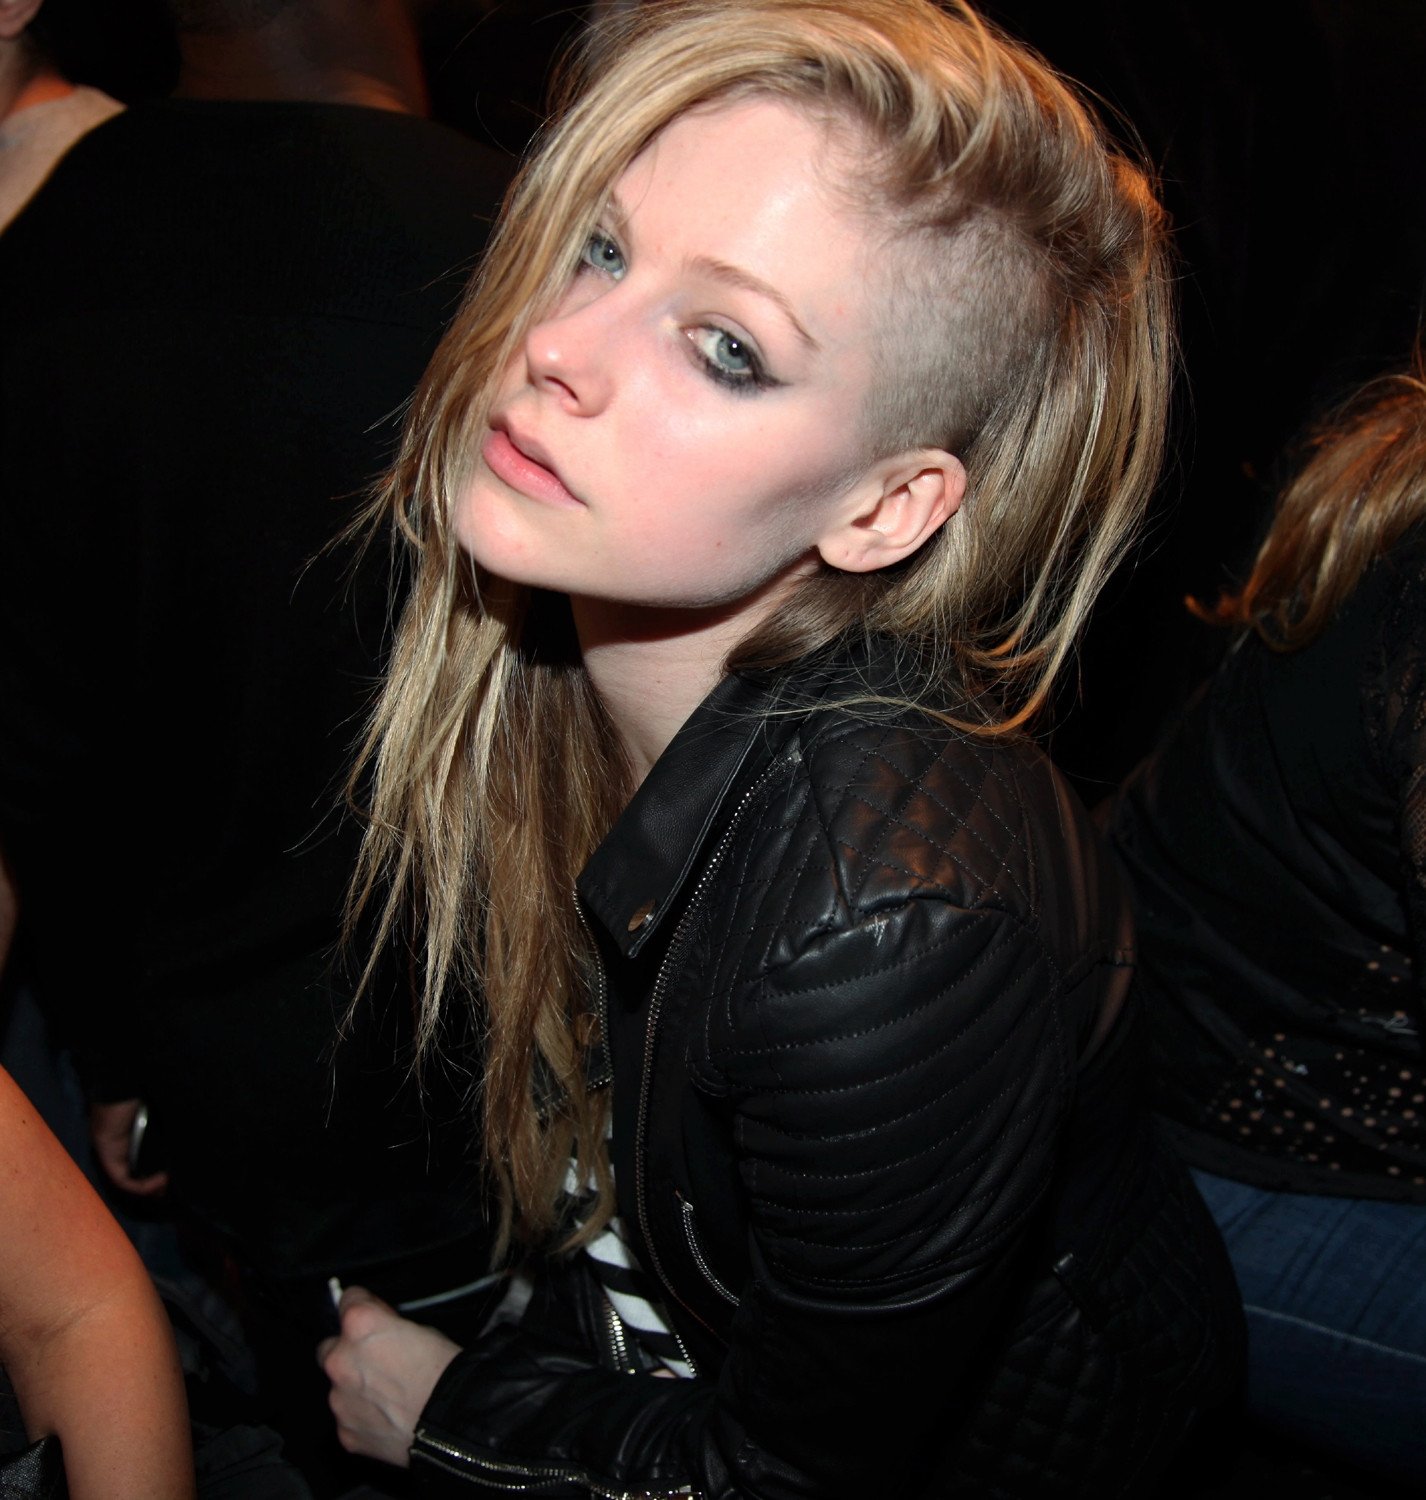 Длинная прическа с выбритыми висками. Аврил Лавин с выбритым виском. Аврил Лавин стрижка. Avril Lavigne с короткими волосами. Новая прическа Аврил Лавин.